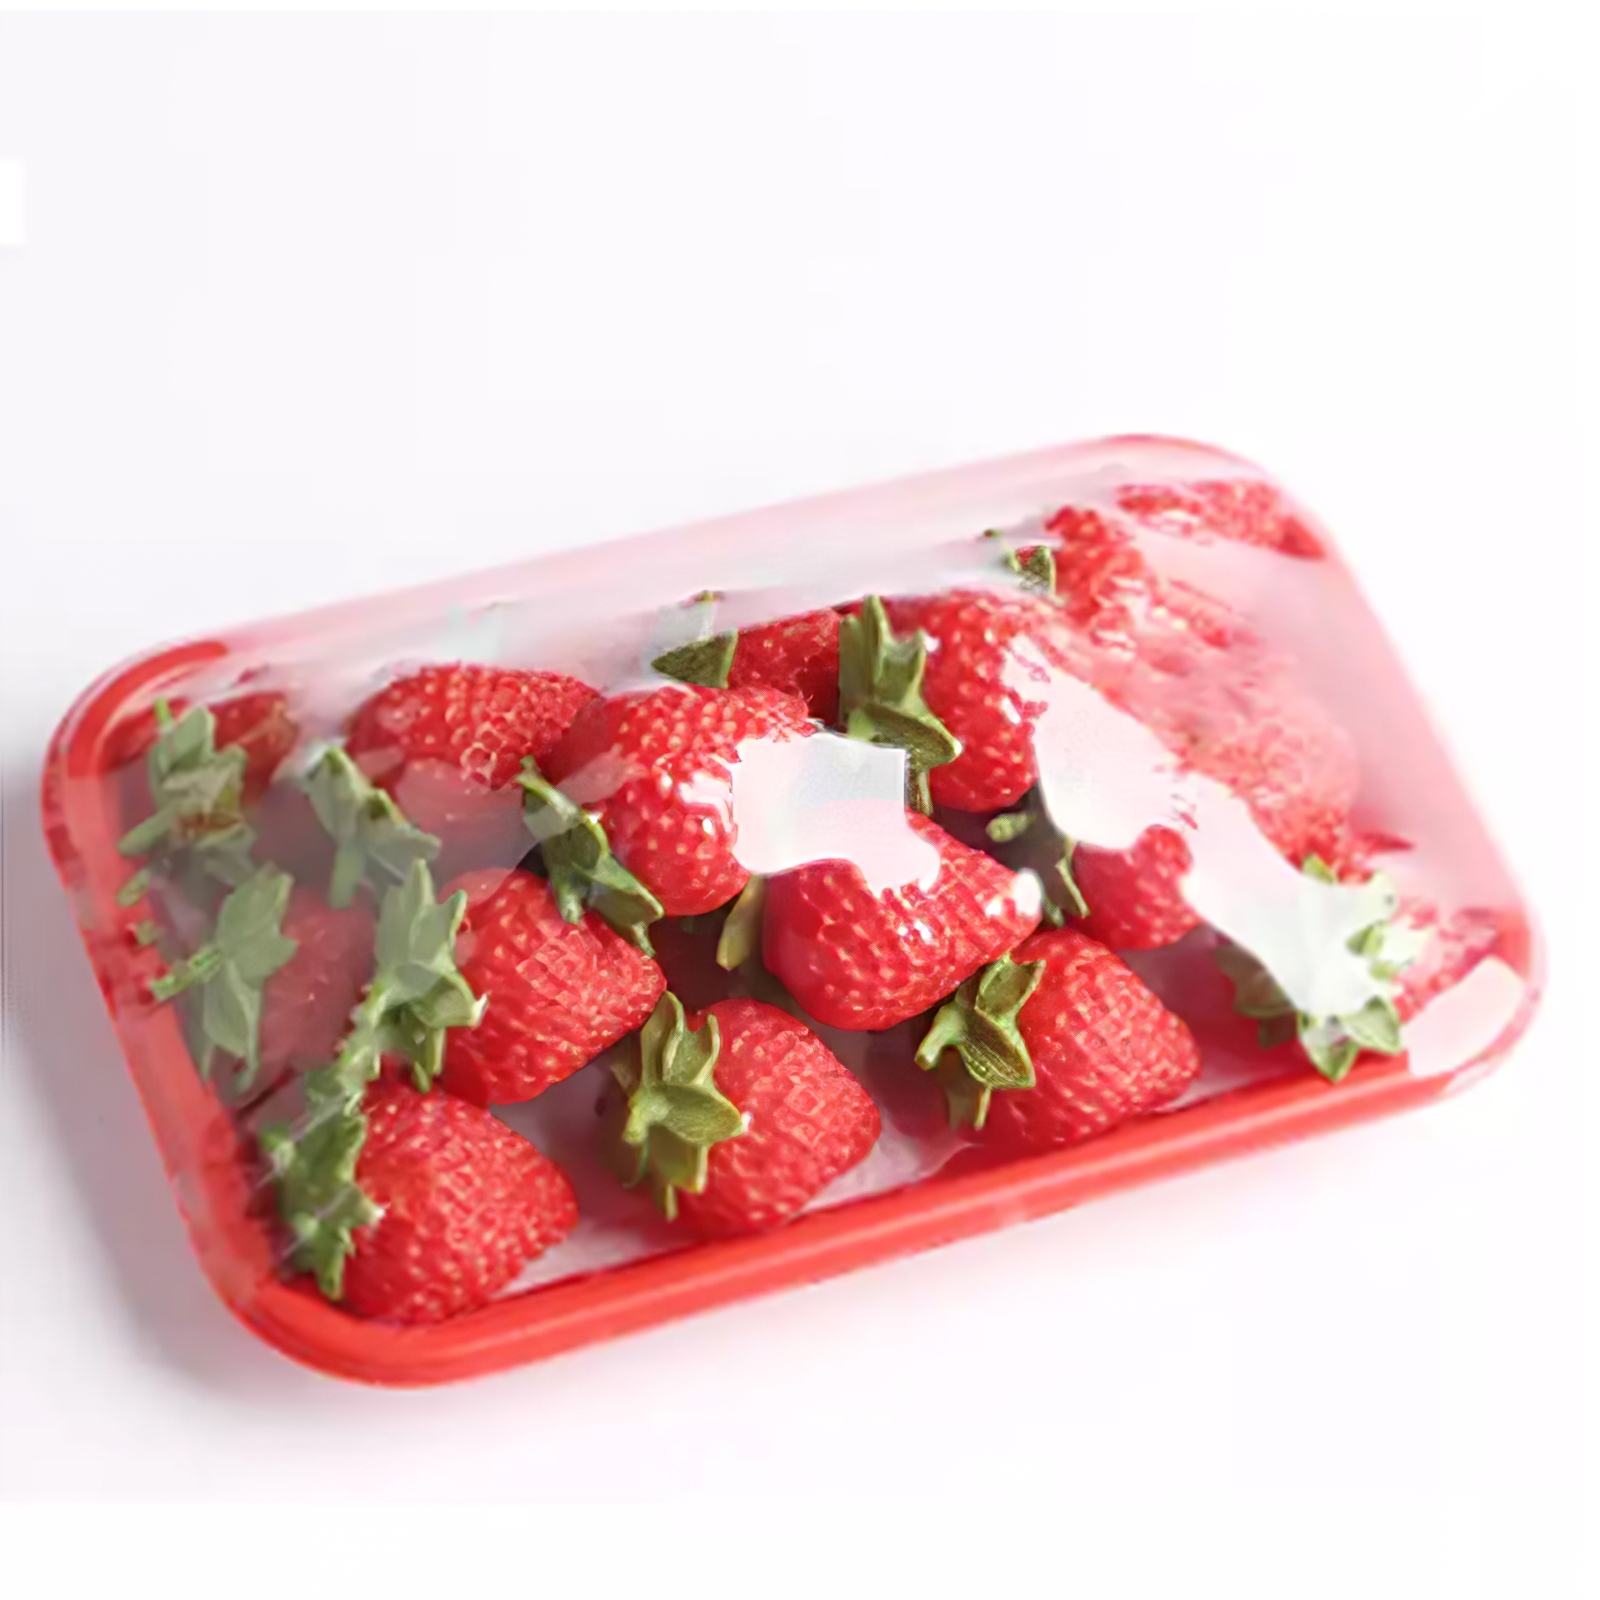 Strawberry Packaging Blister Clear Container Պլաստիկ կենսաքայքայվող մրգի տուփ